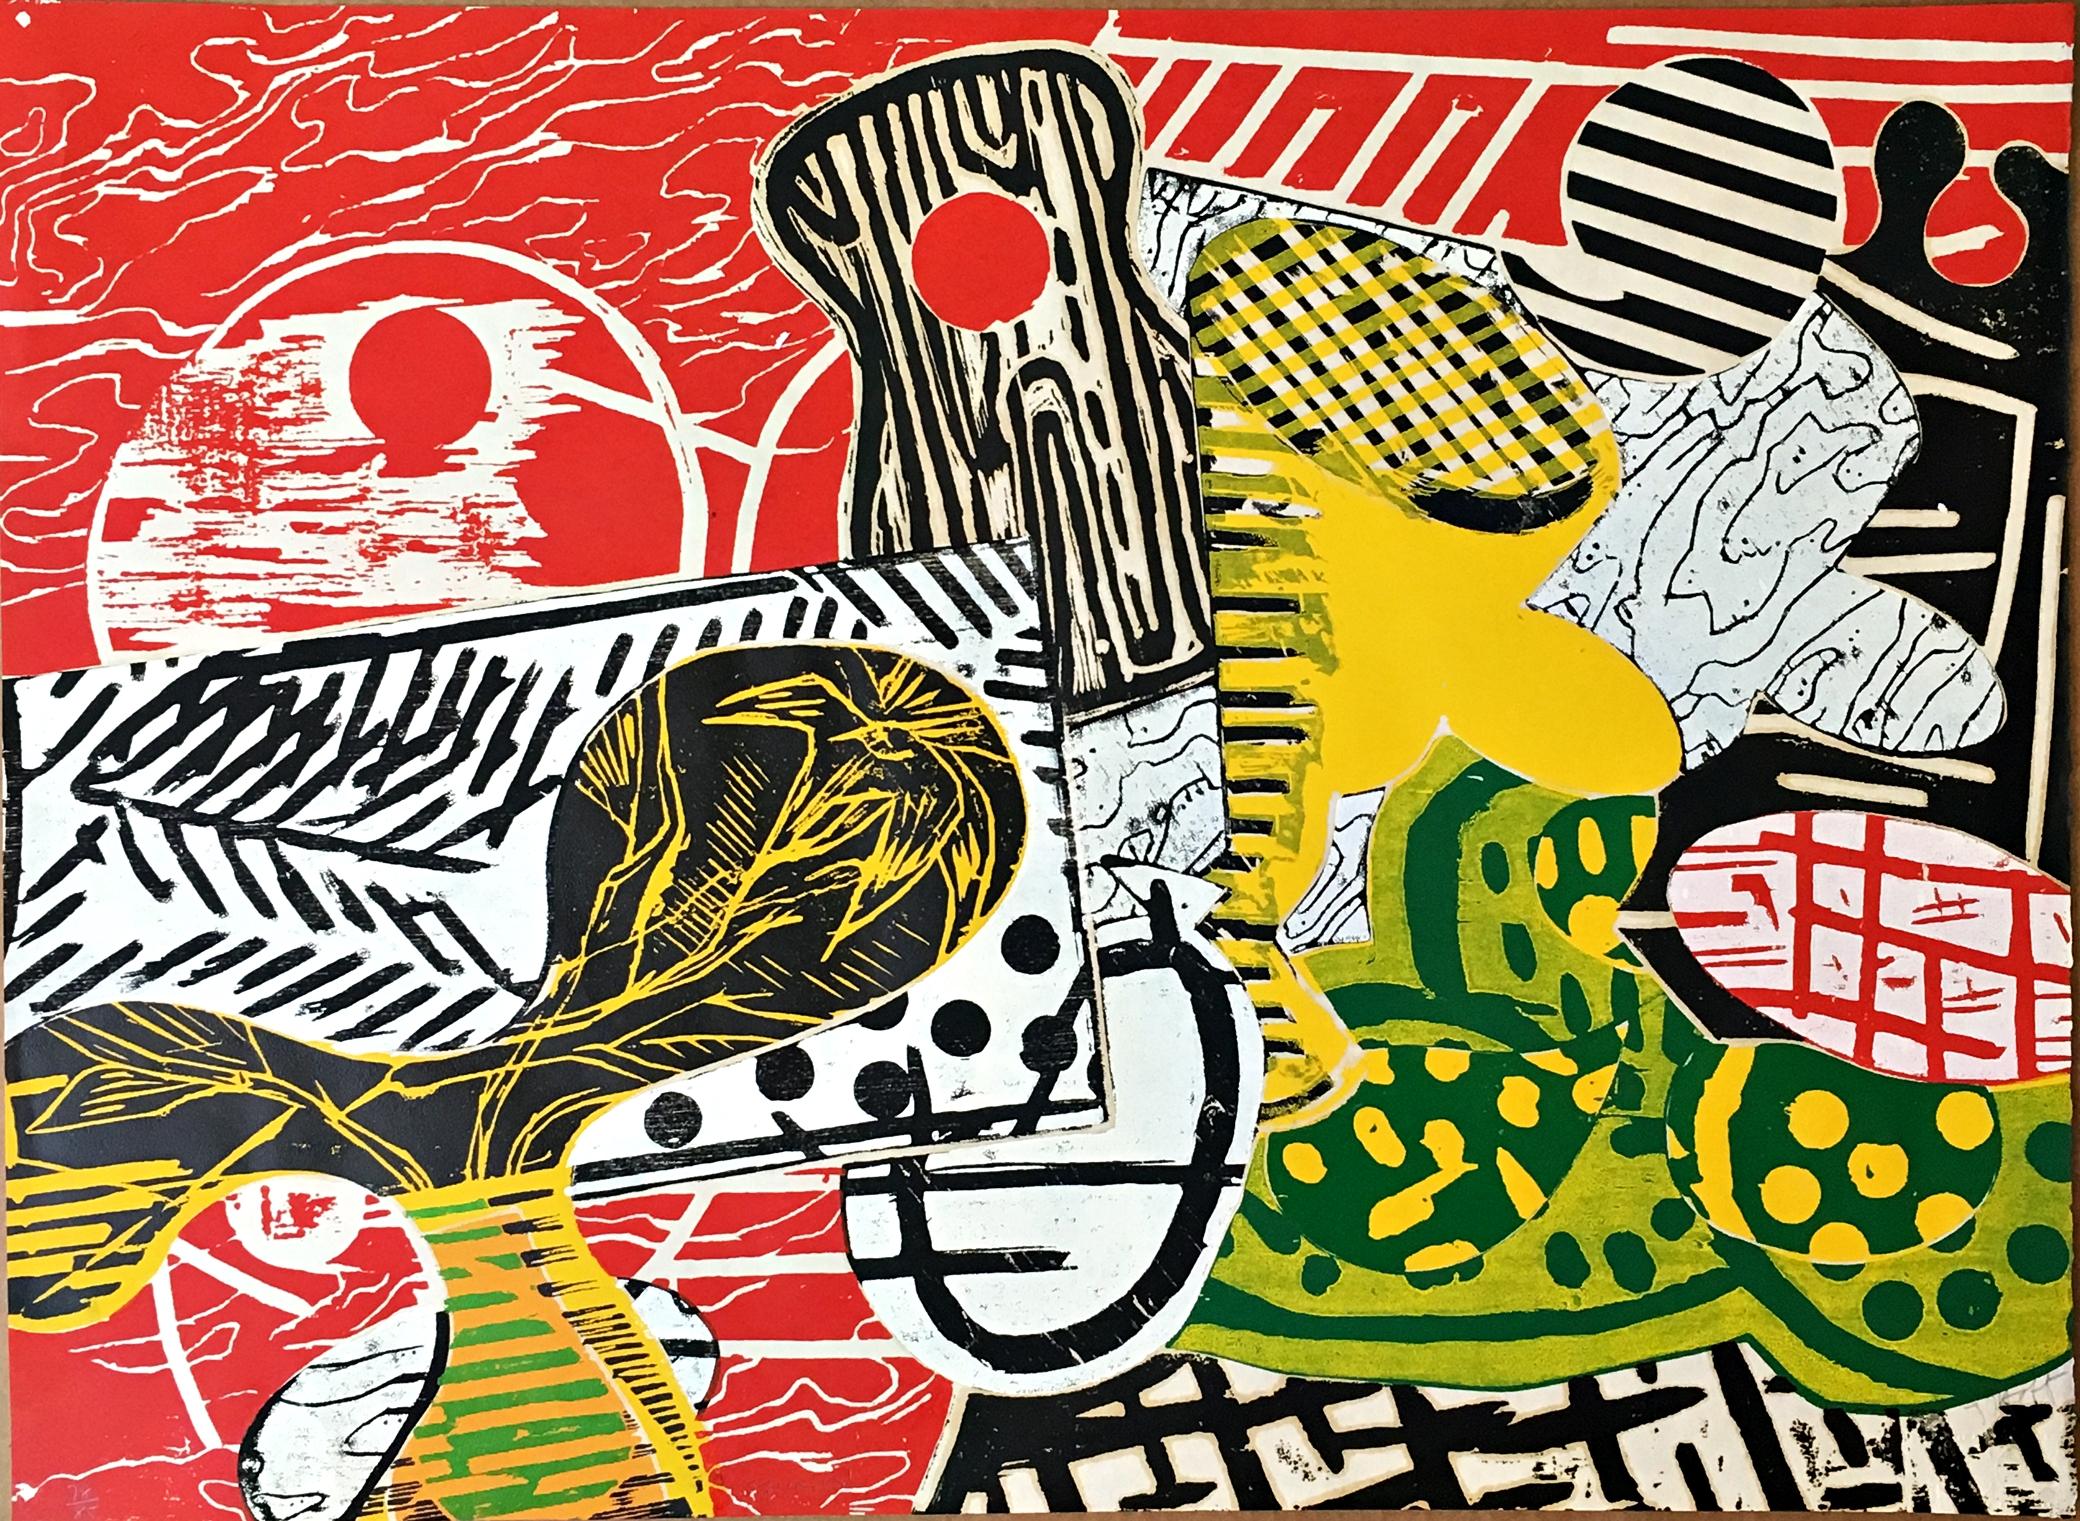 Judy Pfaff Abstract Print – Squash scarce Abstrakter Expressionist Holzschnitt aus europäischem Portfolio S/N